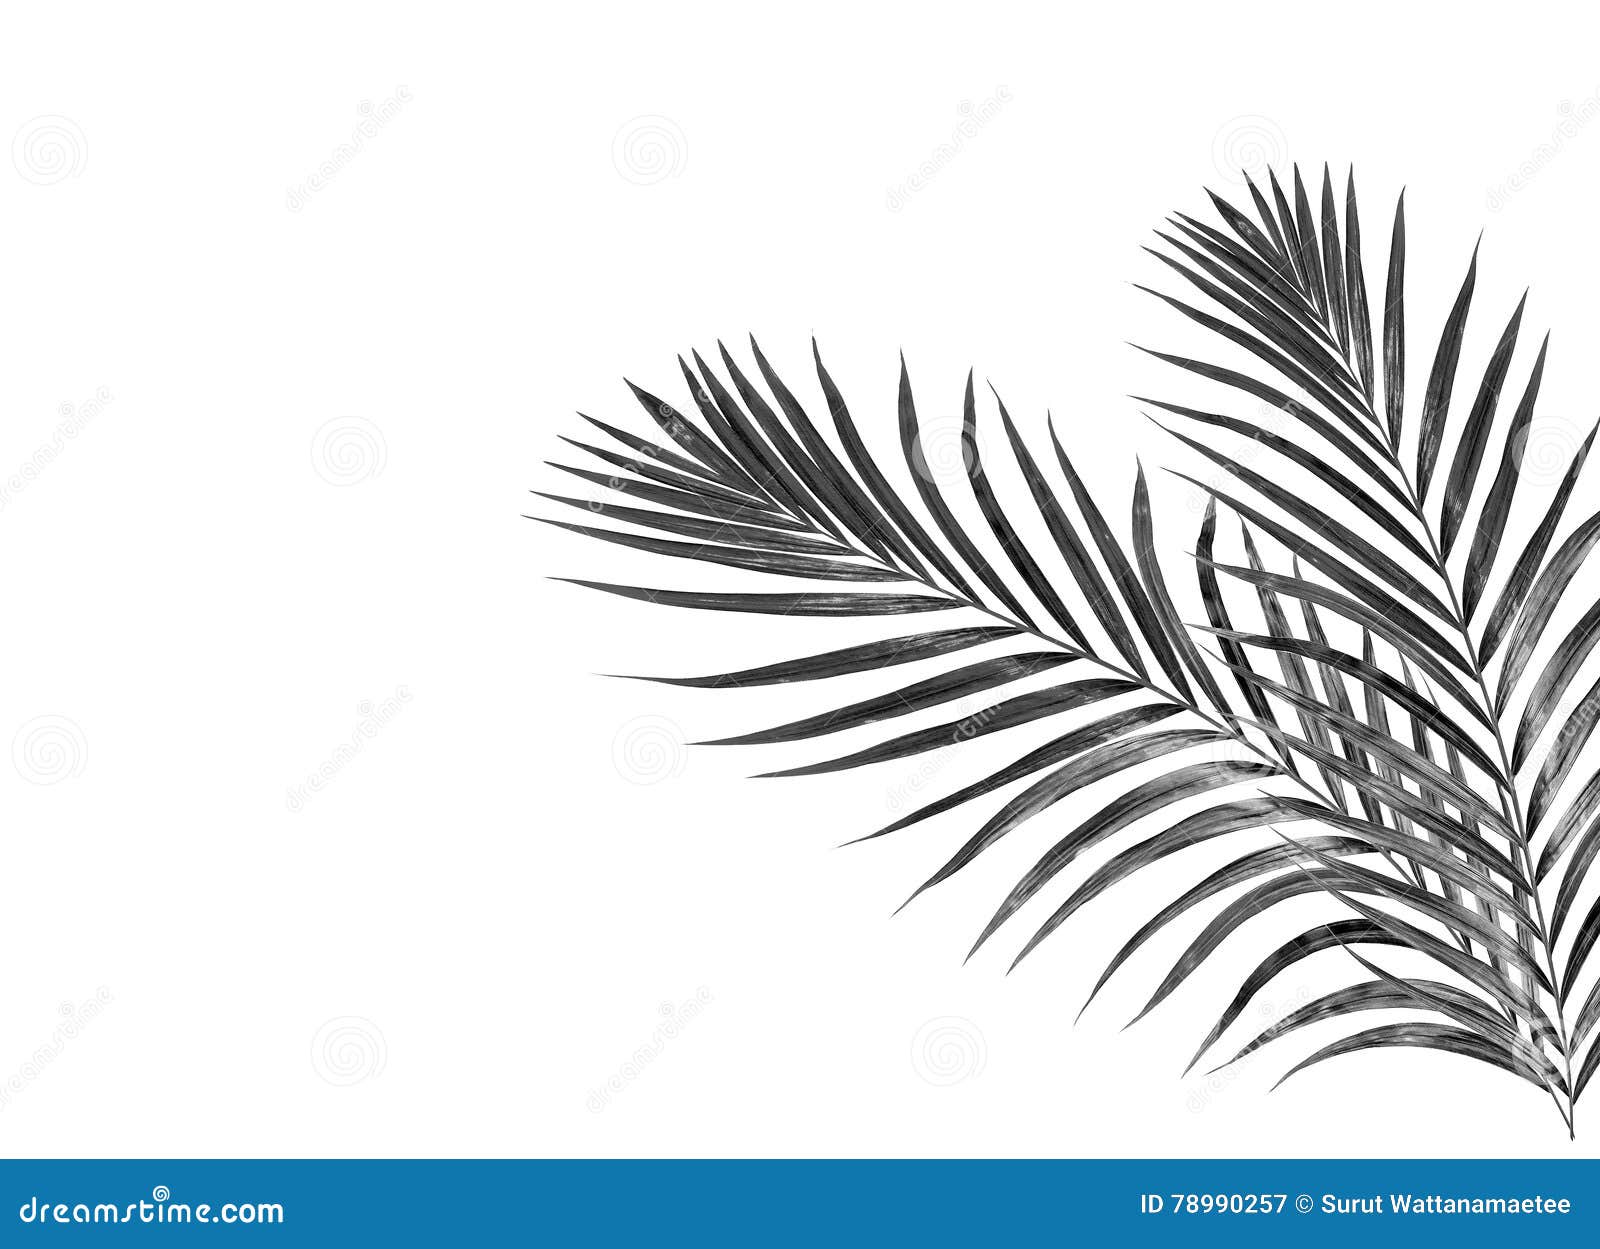 Alternatief voorstel terwijl Jane Austen Zwarte bladeren van palm stock illustratie. Illustration of gebladerte -  78990257